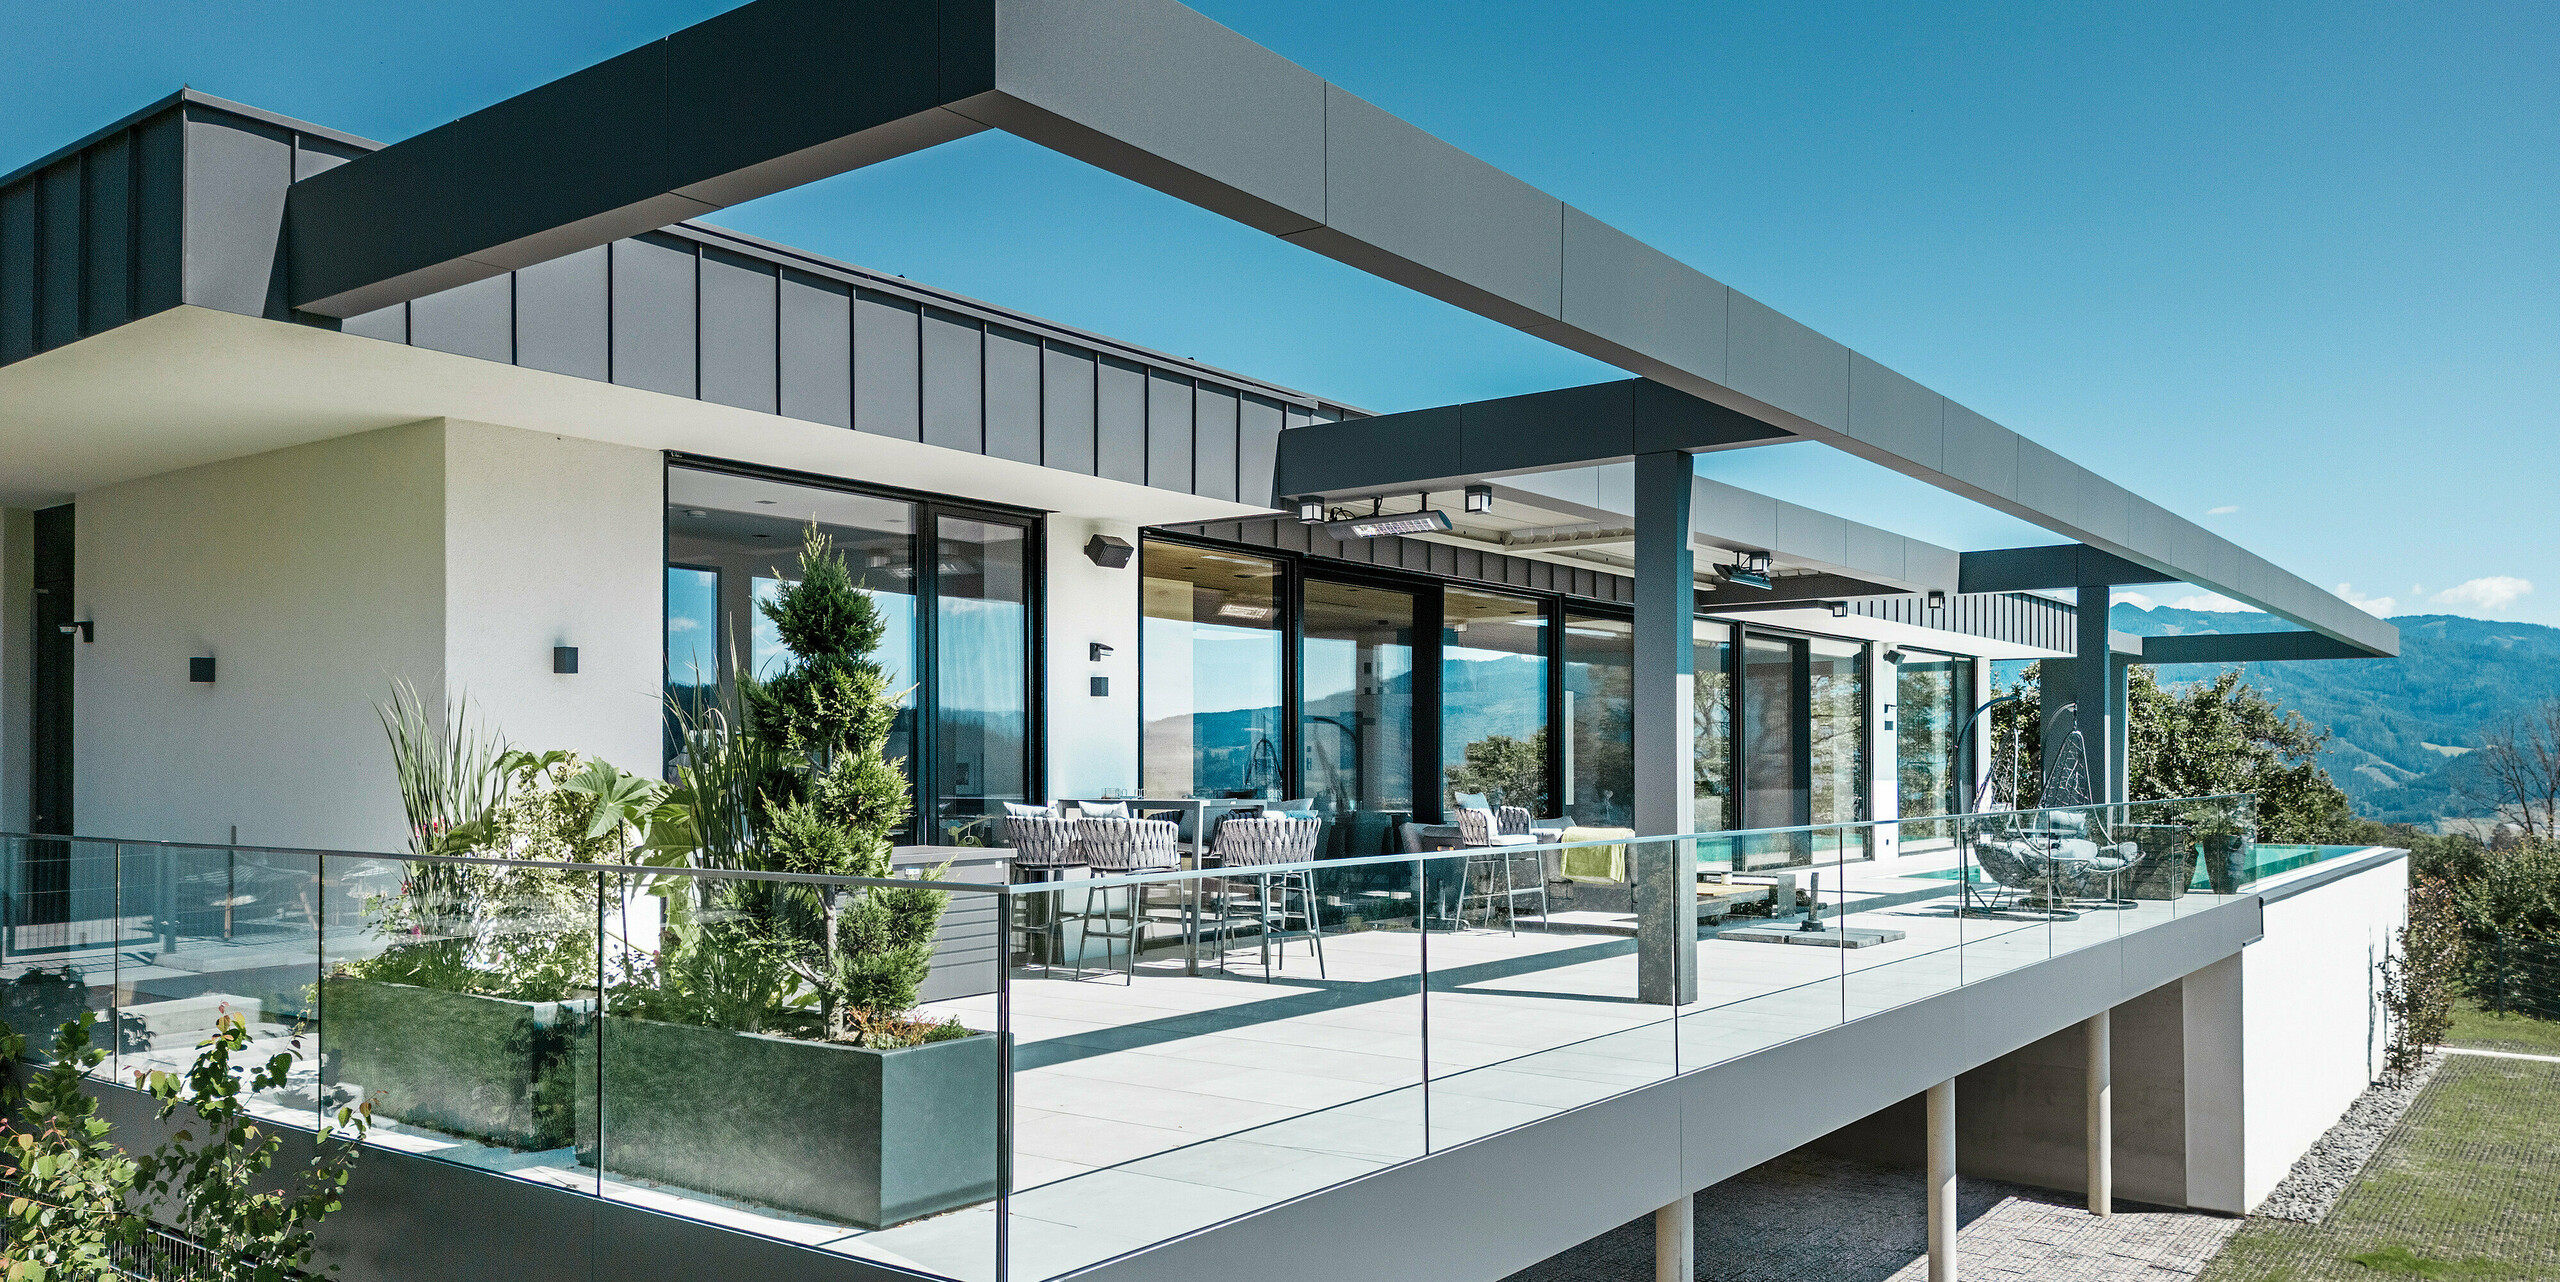 Luxuriöse Terrasse eines Einfamilienhauses in Pogier, Österreich, mit einem eleganten Dach- und Fassadensystem von PREFA. Die Kombination aus PREFALZ und PREFABOND in Dunkelgrau schafft ein modernes und anspruchsvolles Design. Die großzügige Terrasse bietet eine atemberaubende Aussicht und ist mit Glasgeländern ausgestattet, die für eine offene und einladende Atmosphäre sorgen. Die teilweise überdachte Außenfläche ermöglicht es, die Schönheit der umliegenden Natur zu genießen und ist ideal für Entspannung und soziale Zusammenkünfte.